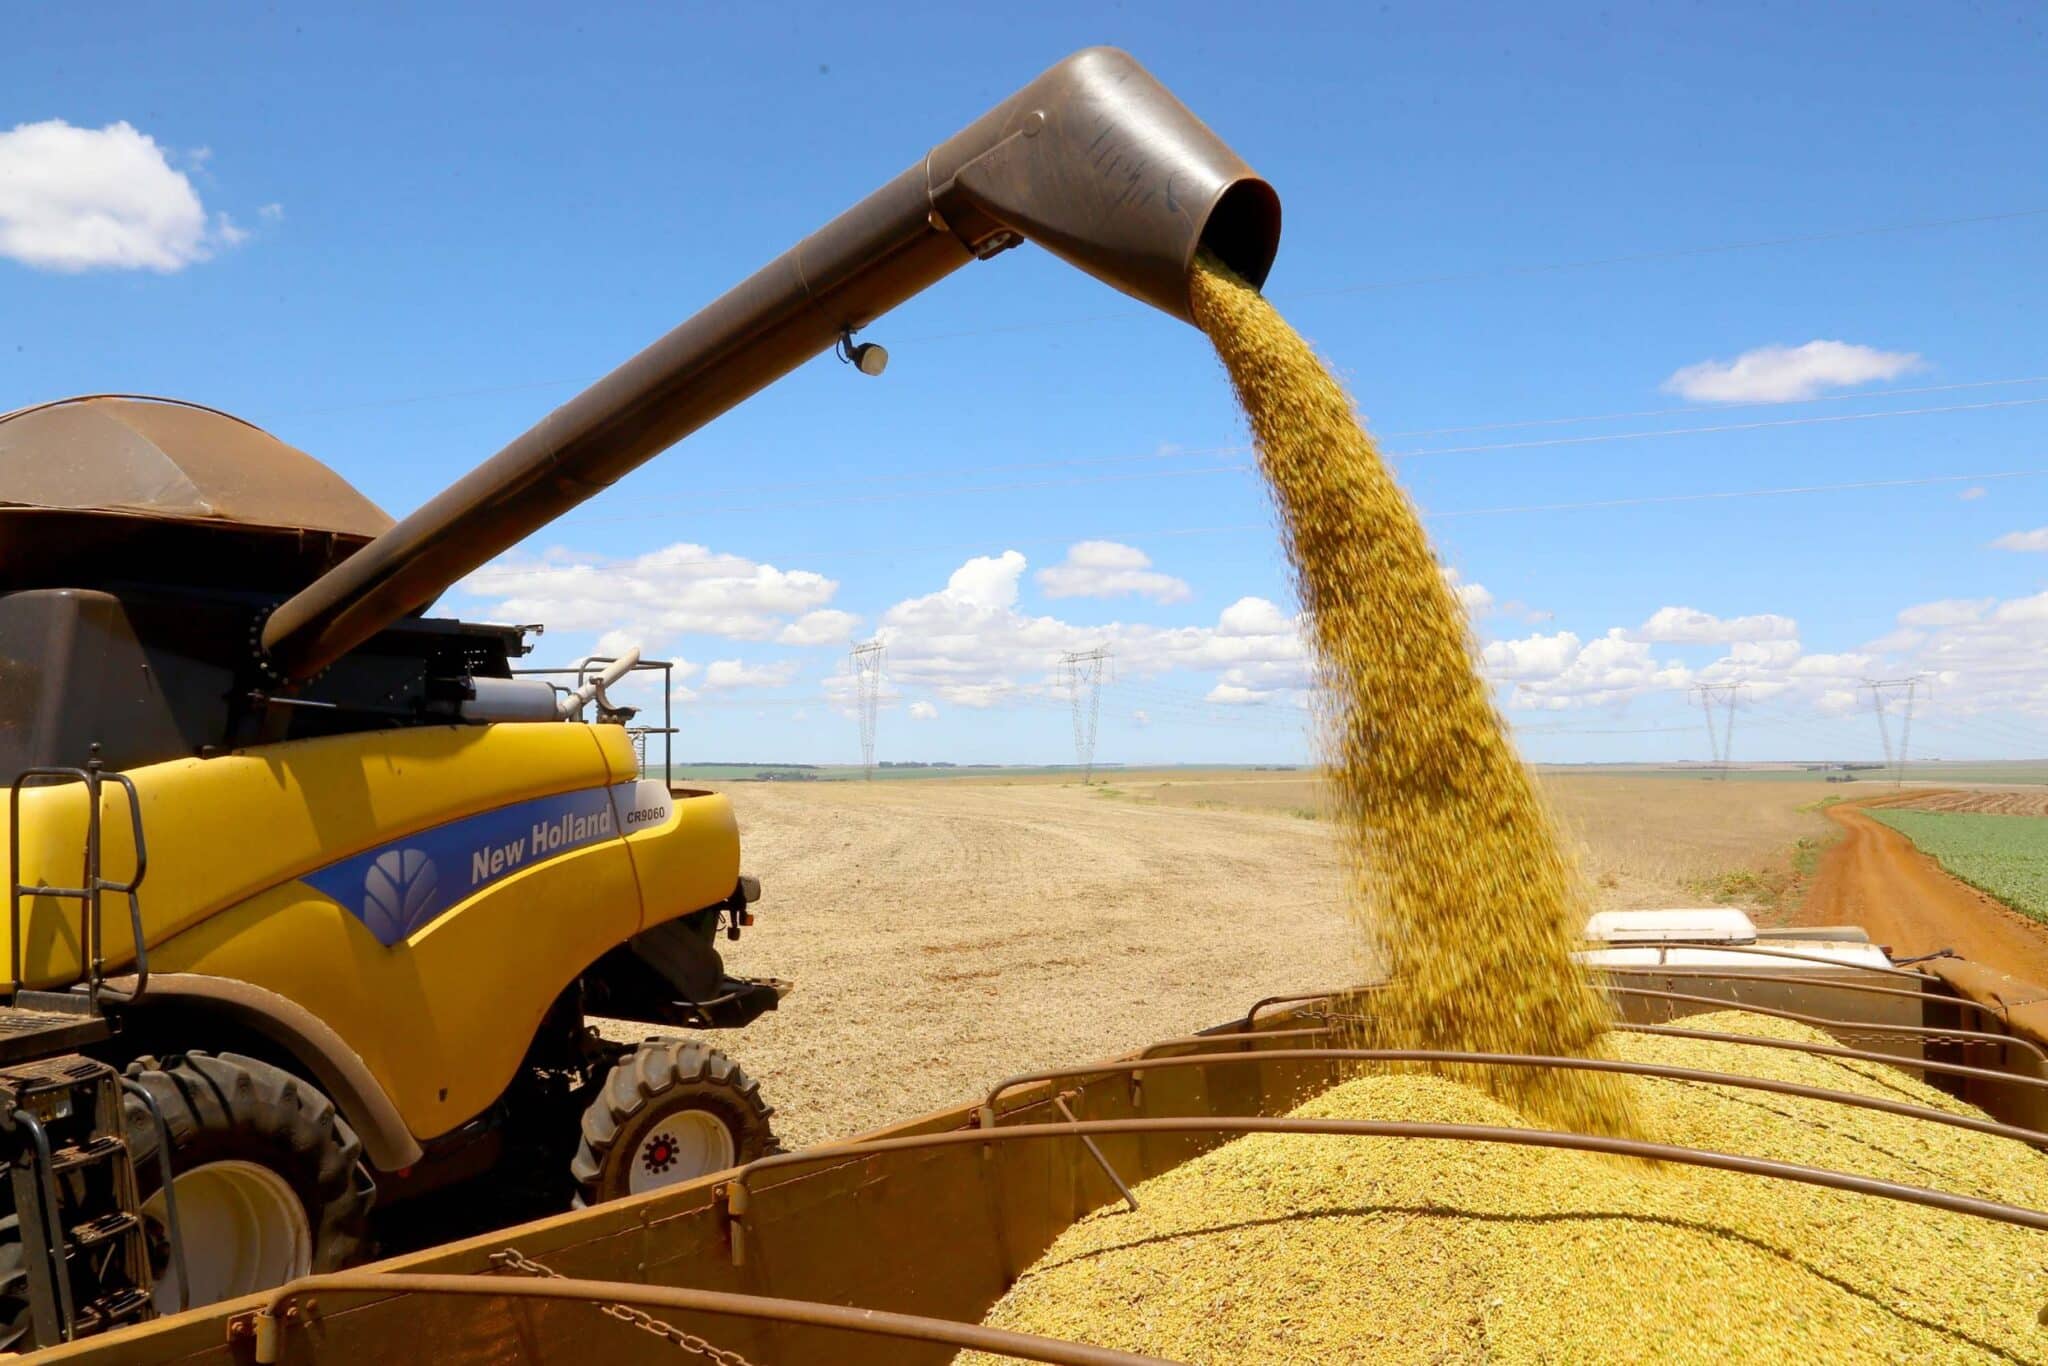 Safra 2021/22 de milho se encerra como a mais avançada dos últimos cinco anos